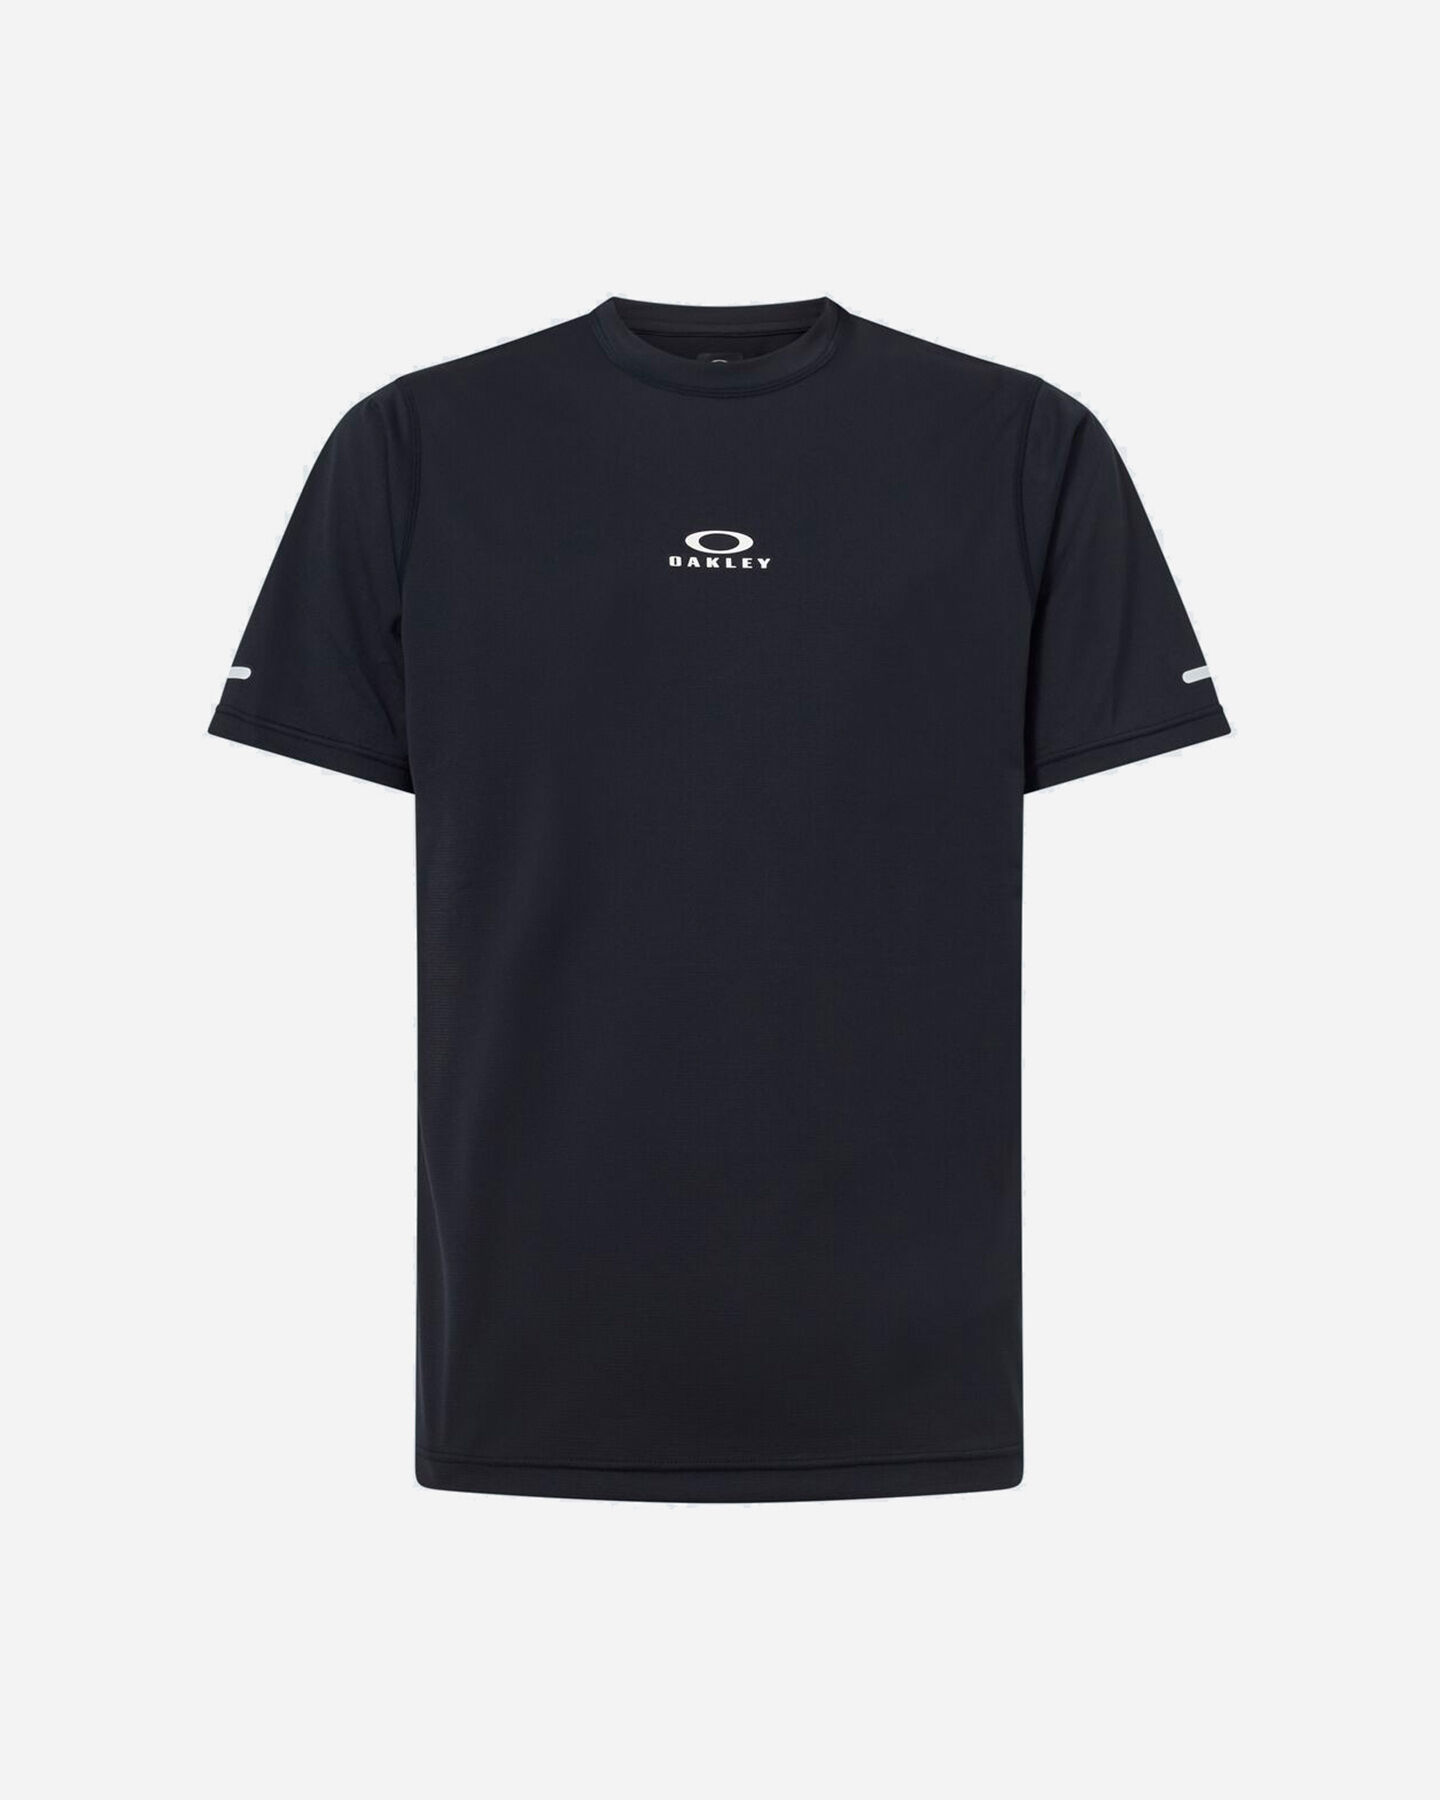  T-Shirt OAKLEY PURSUIT LITE M S5543482 scatto 0